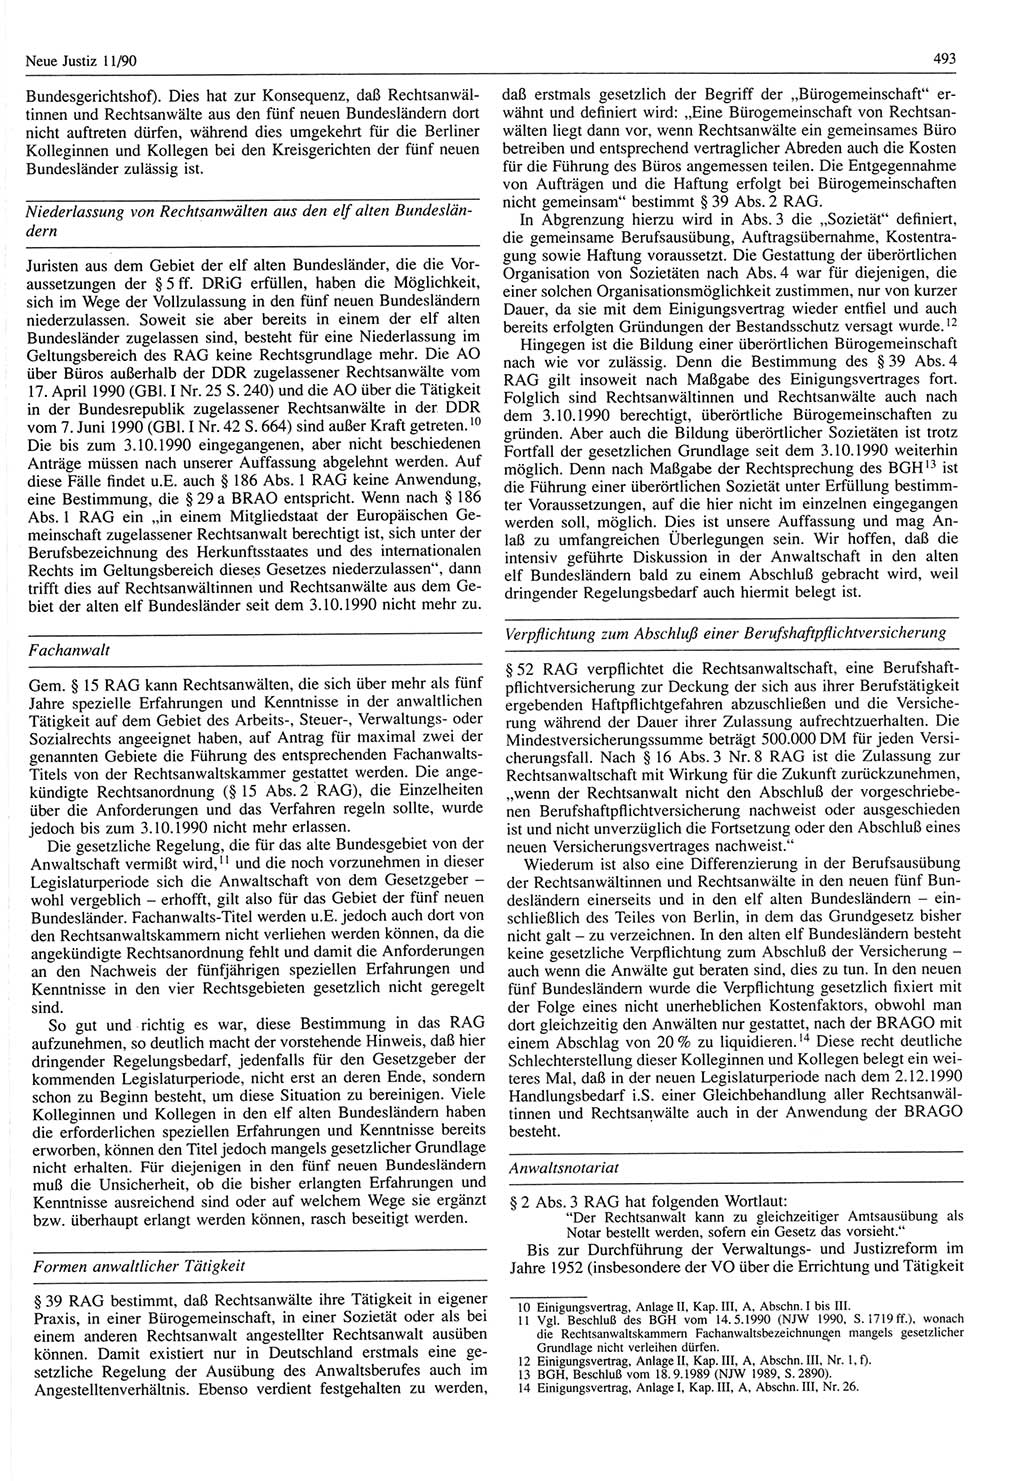 Neue Justiz (NJ), Zeitschrift für Rechtsetzung und Rechtsanwendung [Deutsche Demokratische Republik (DDR)], 44. Jahrgang 1990, Seite 493 (NJ DDR 1990, S. 493)